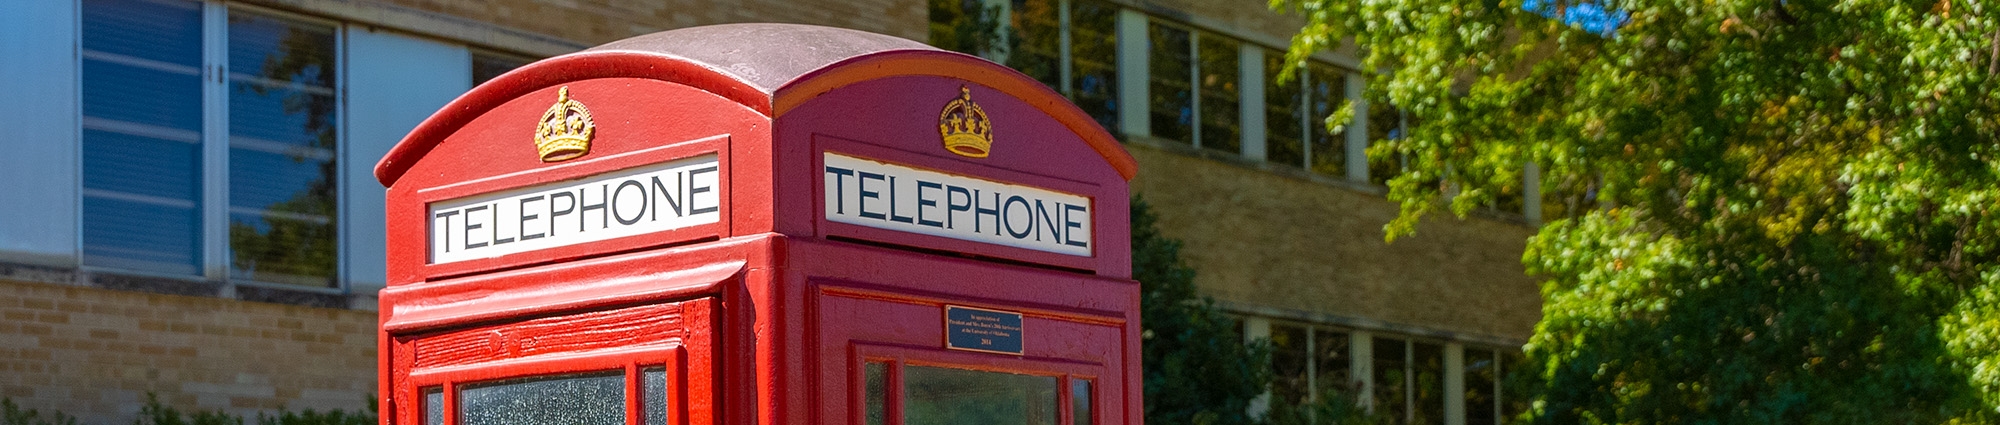 OU-Tulsa telephone booth 